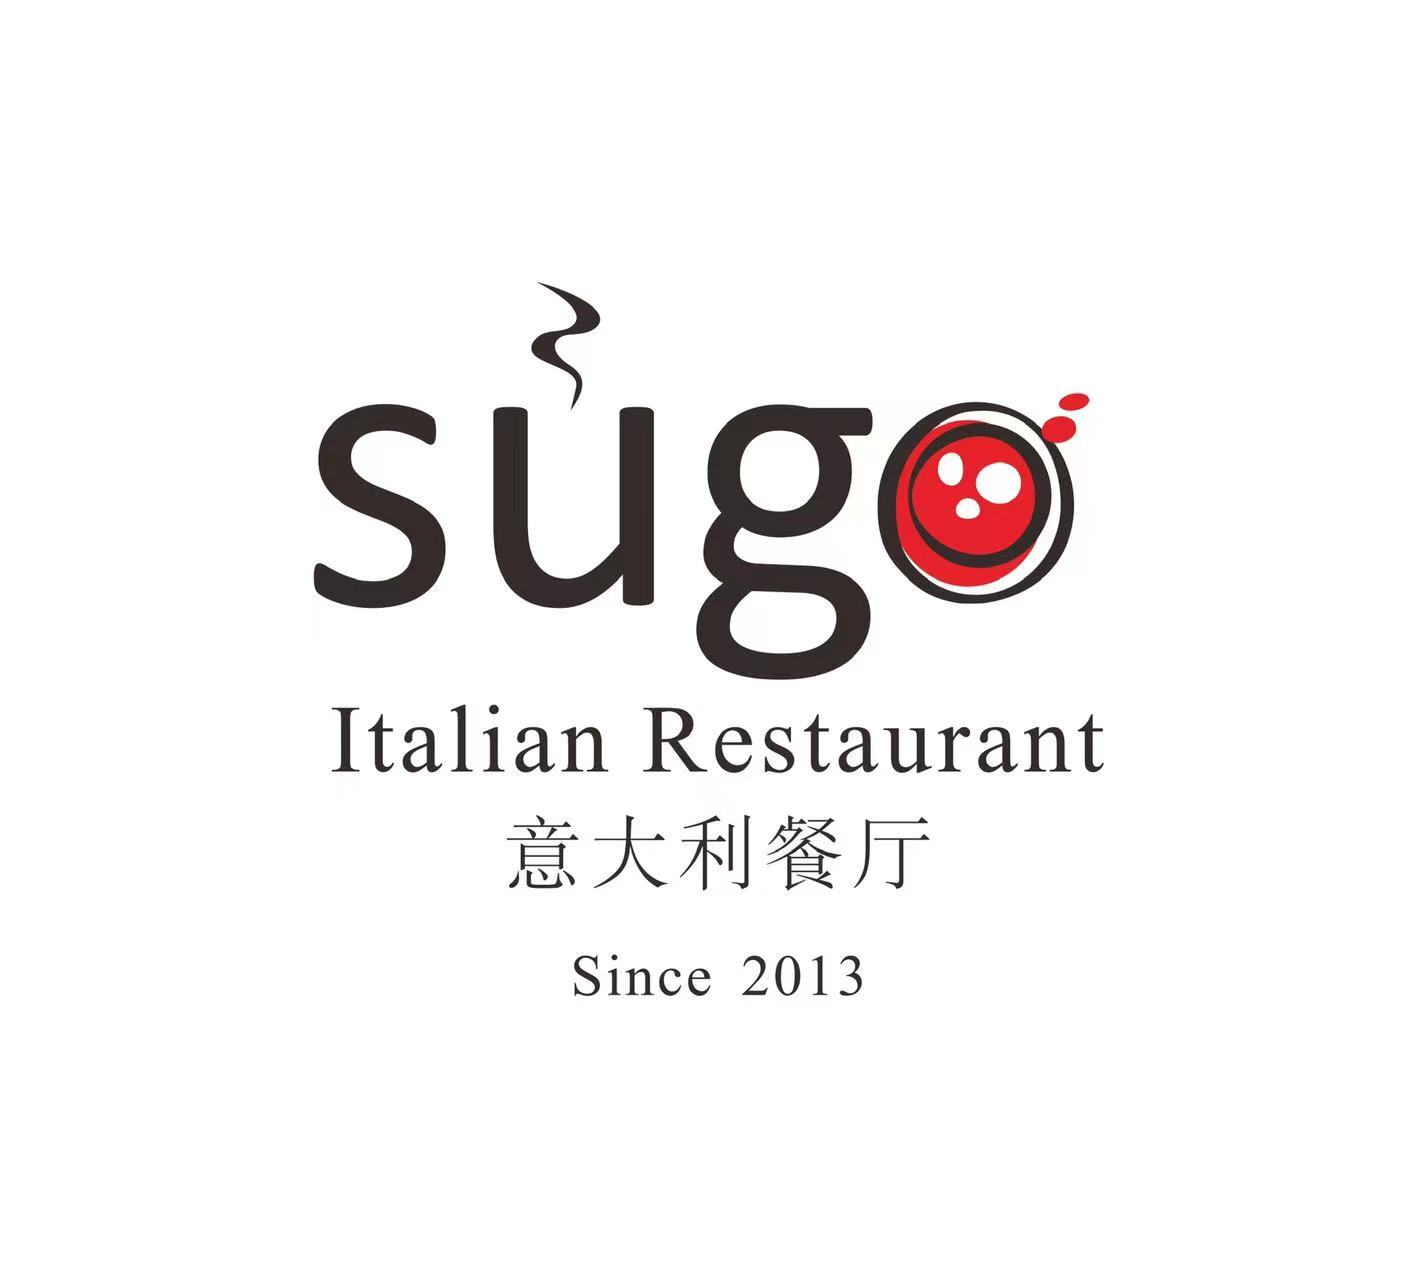 Featured image for “Sùgo Italian Restaurant”